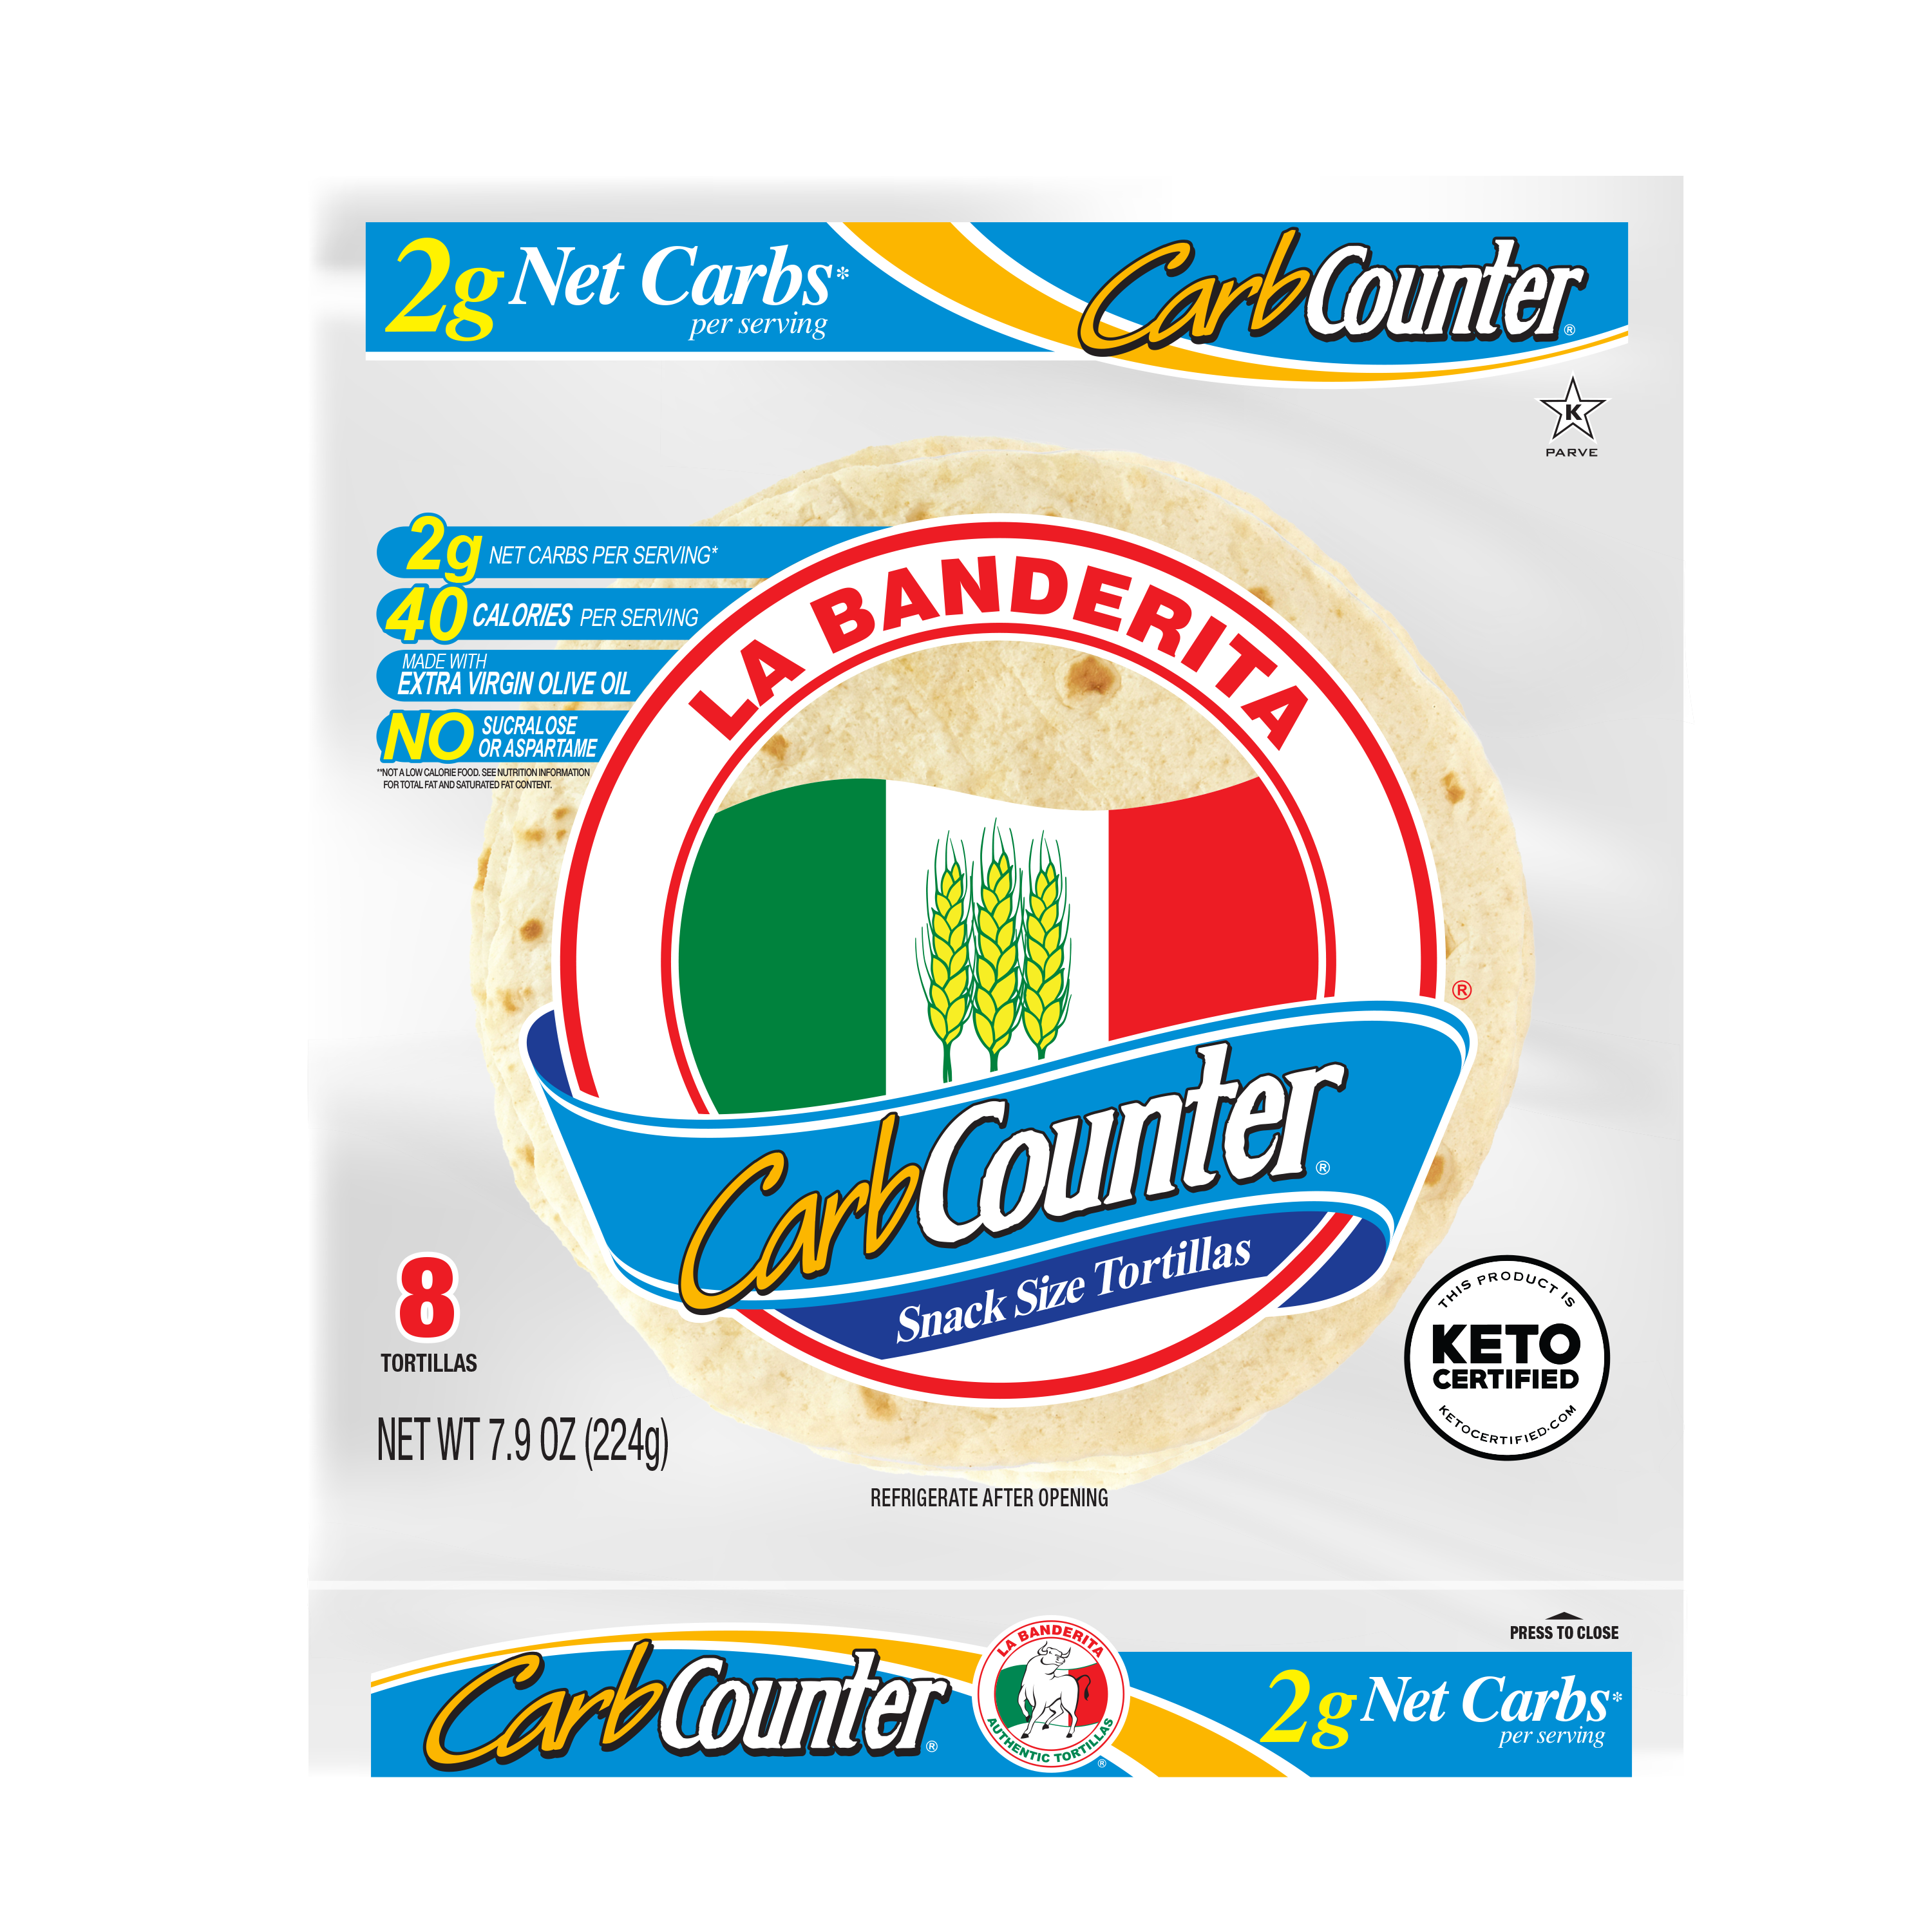 La Banderita Carb Counter Snack Size Flour Tortillas 8 Count Bag - image 1 of 9